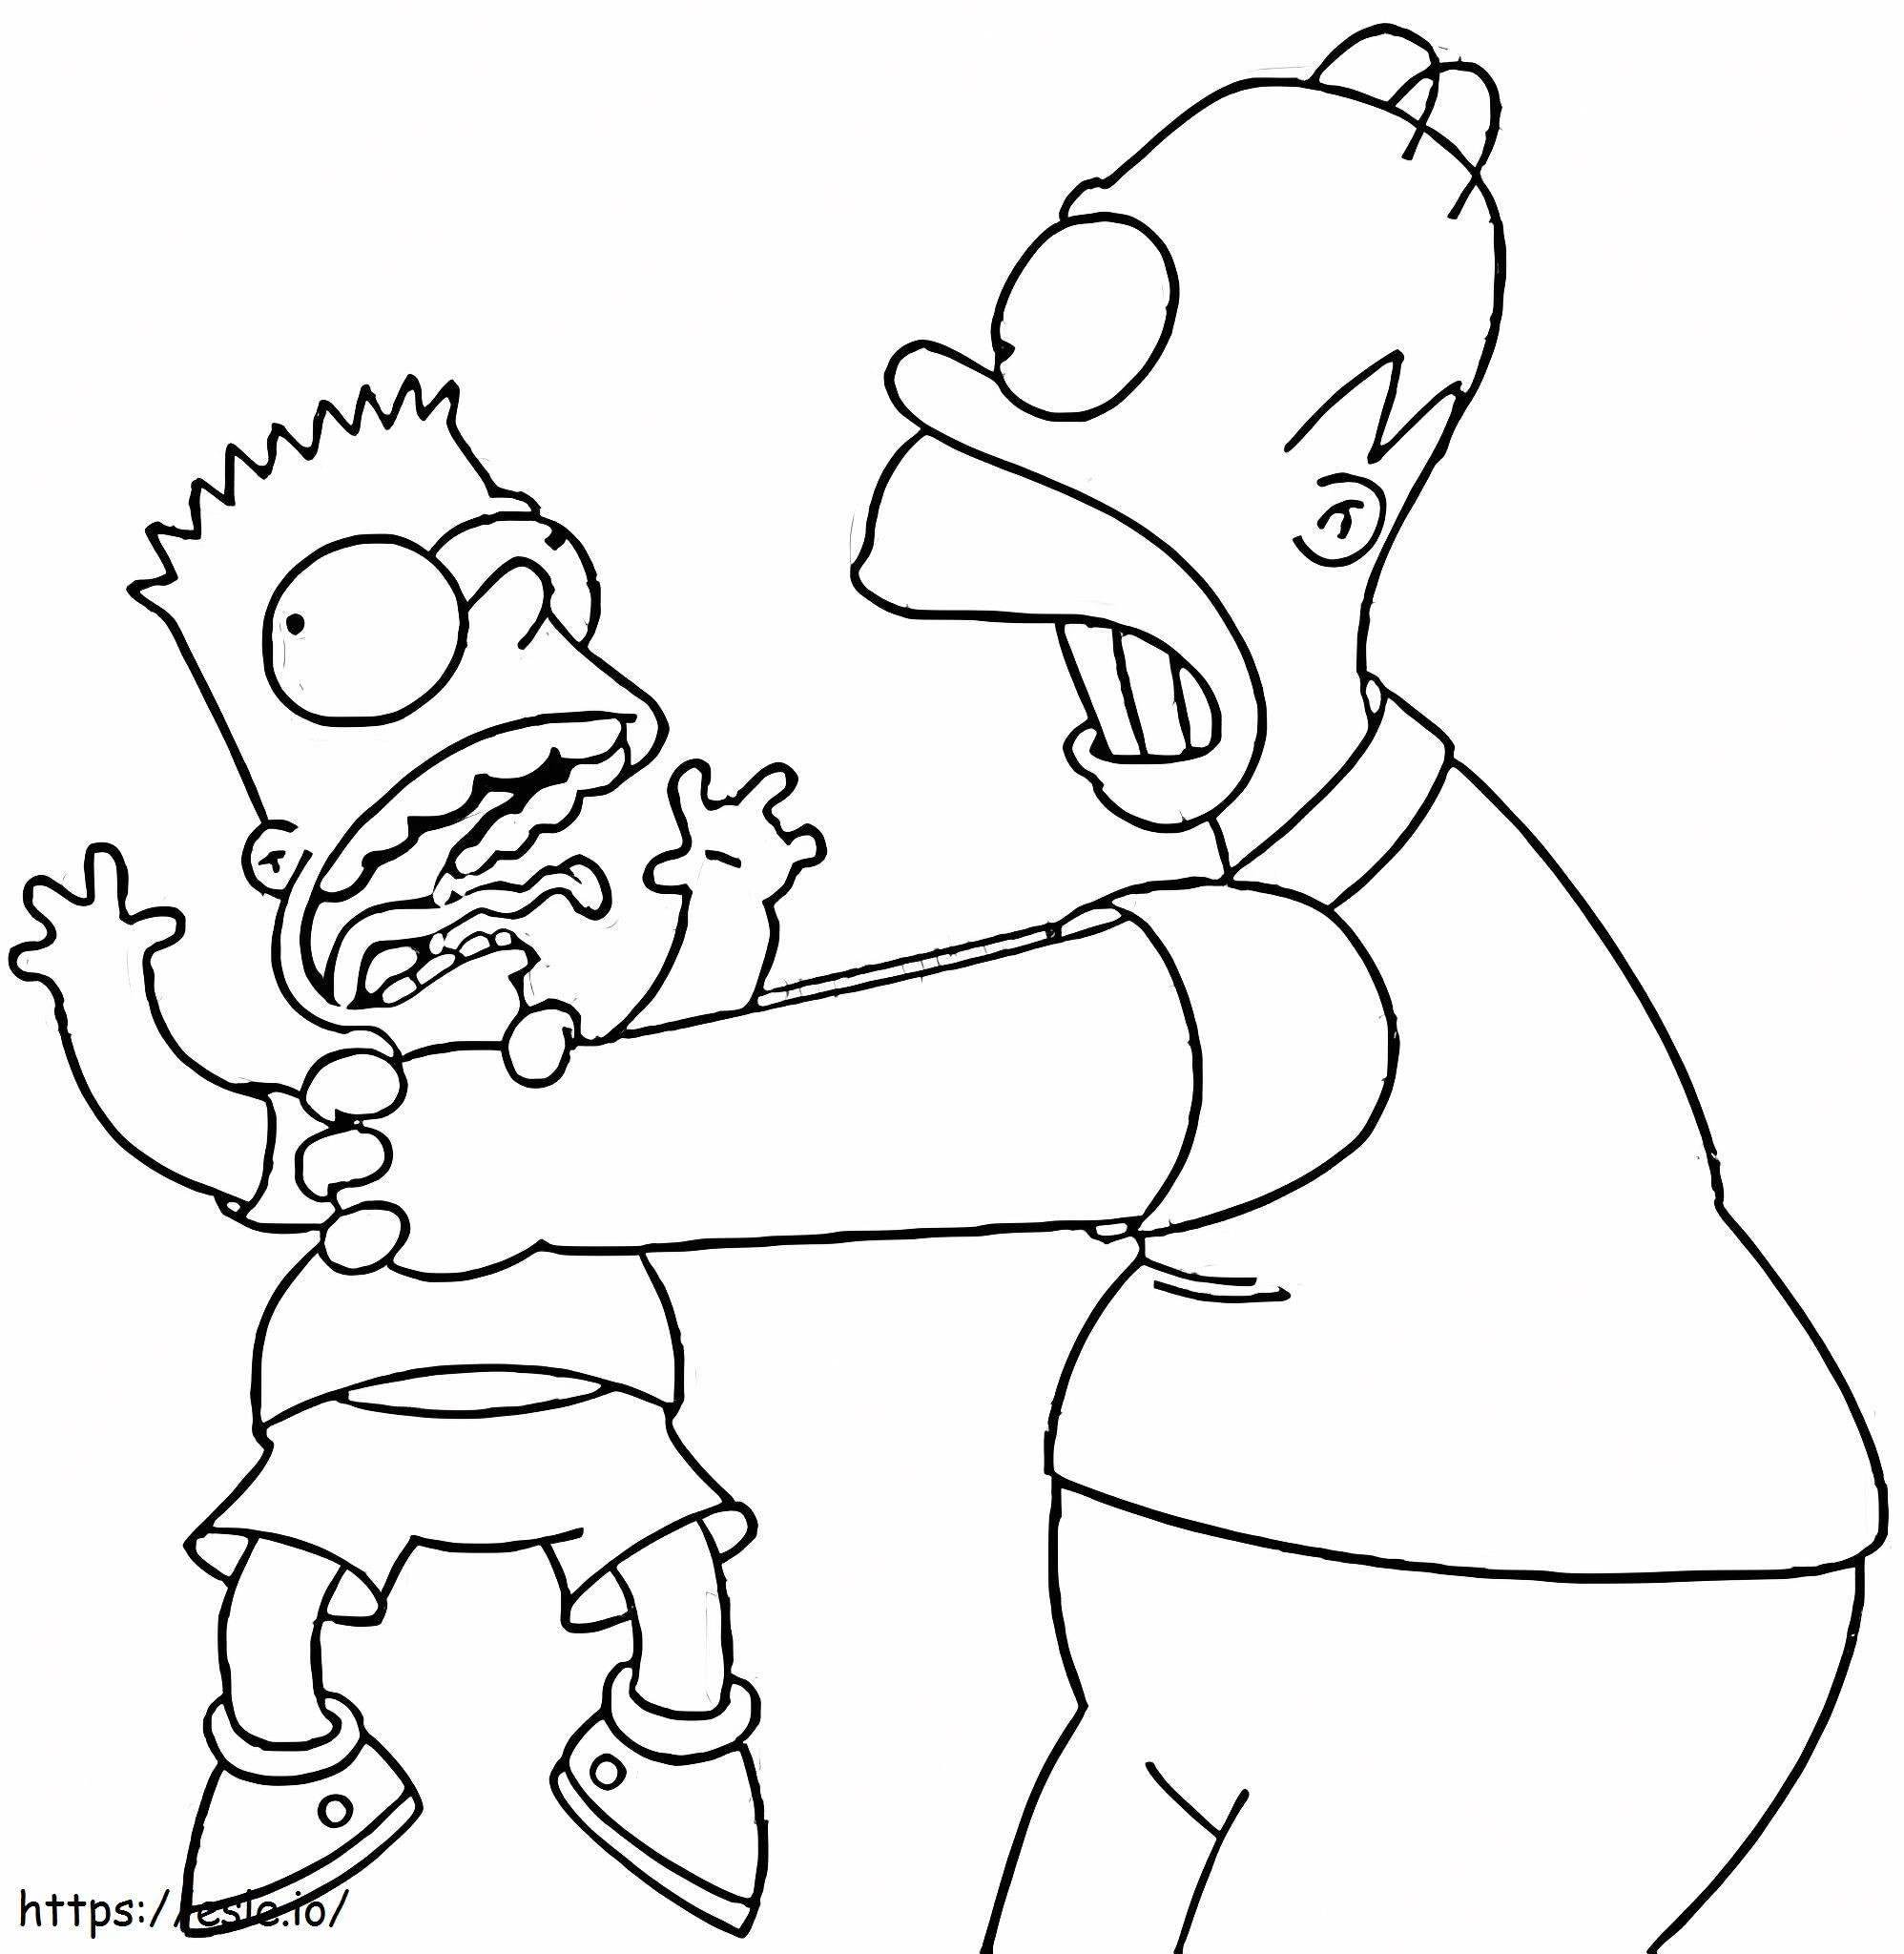 Coloriage Simpsons père et fils s'amusant à imprimer dessin